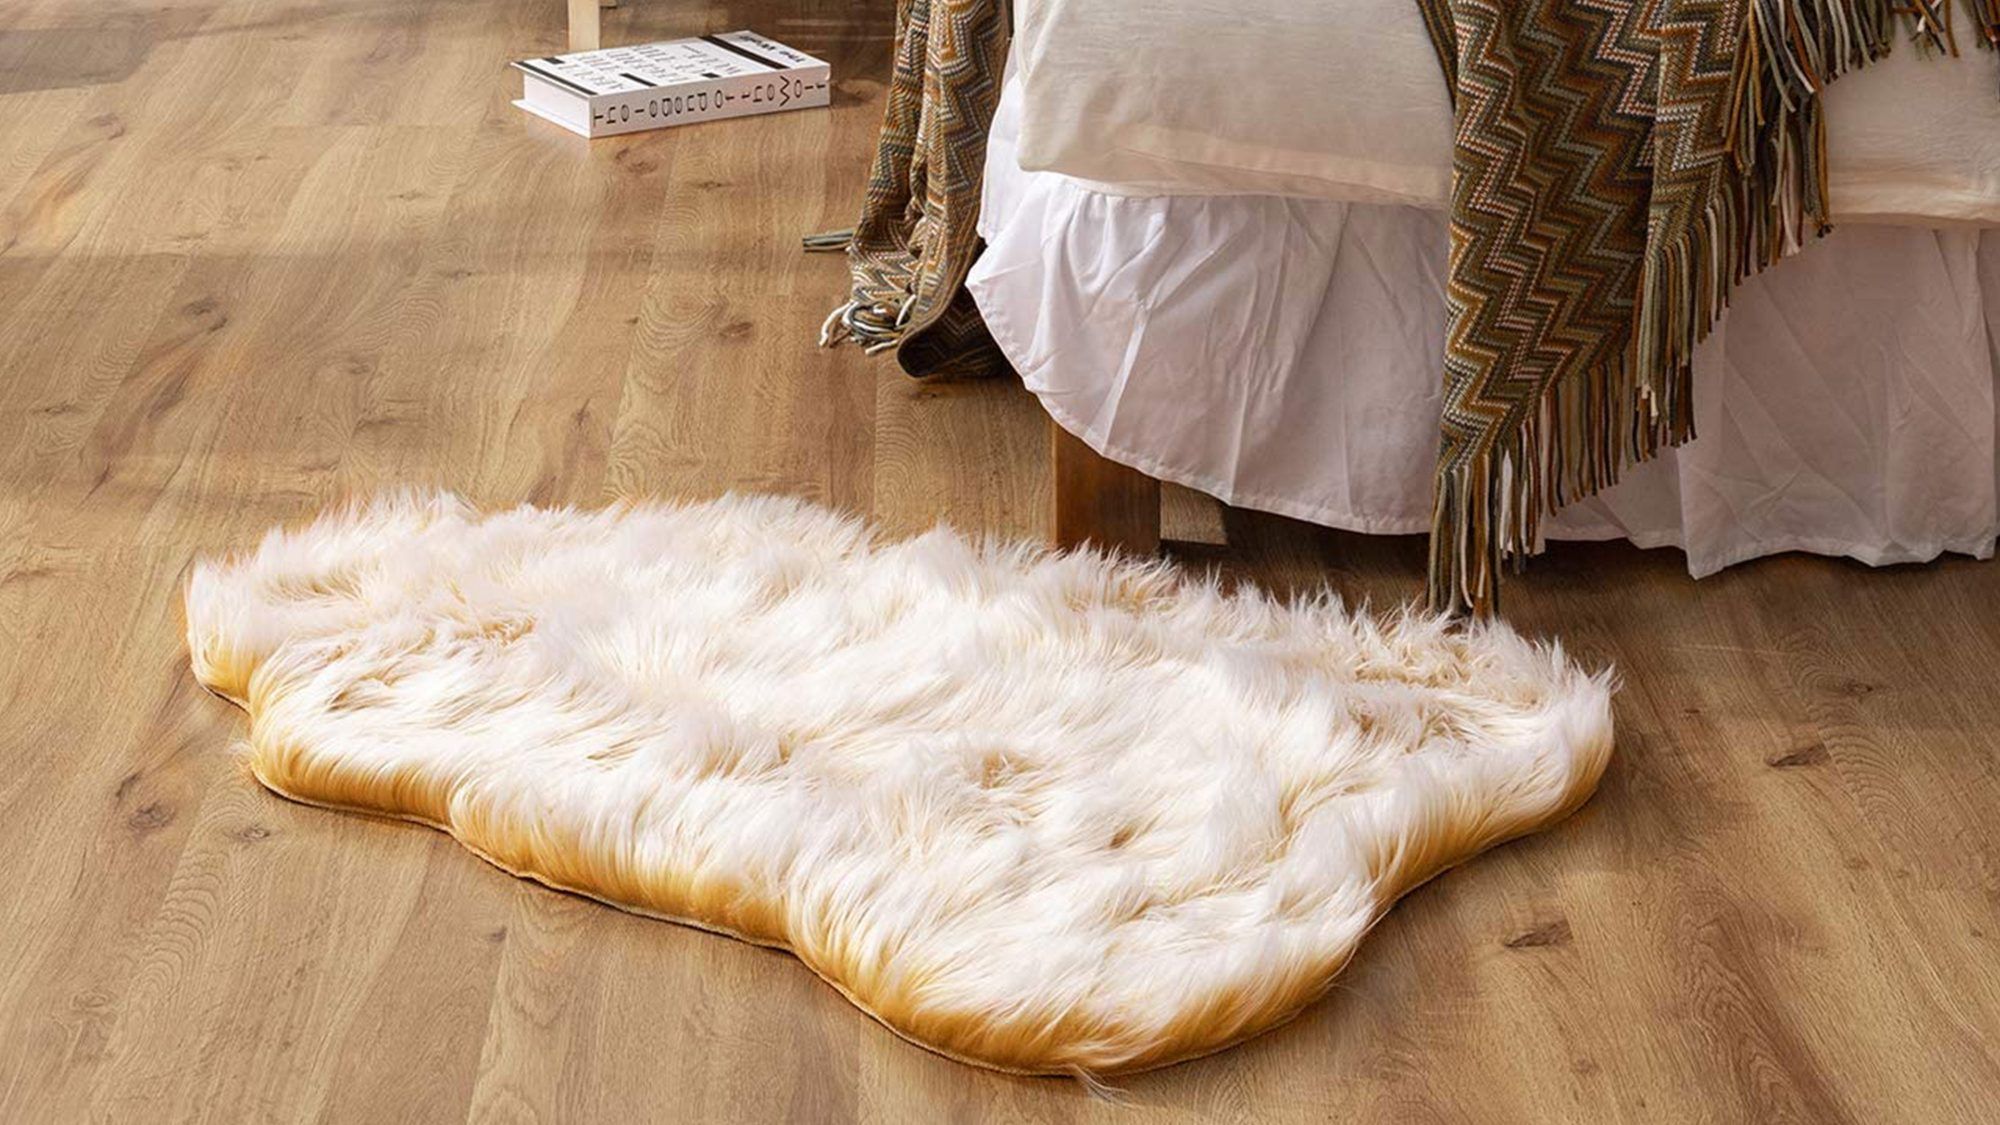 Tisuće kupaca Amazona dodaju ovaj 'luksuzni i mekani' tepih od umjetnog krzna od 20 dolara na svoju listu želja